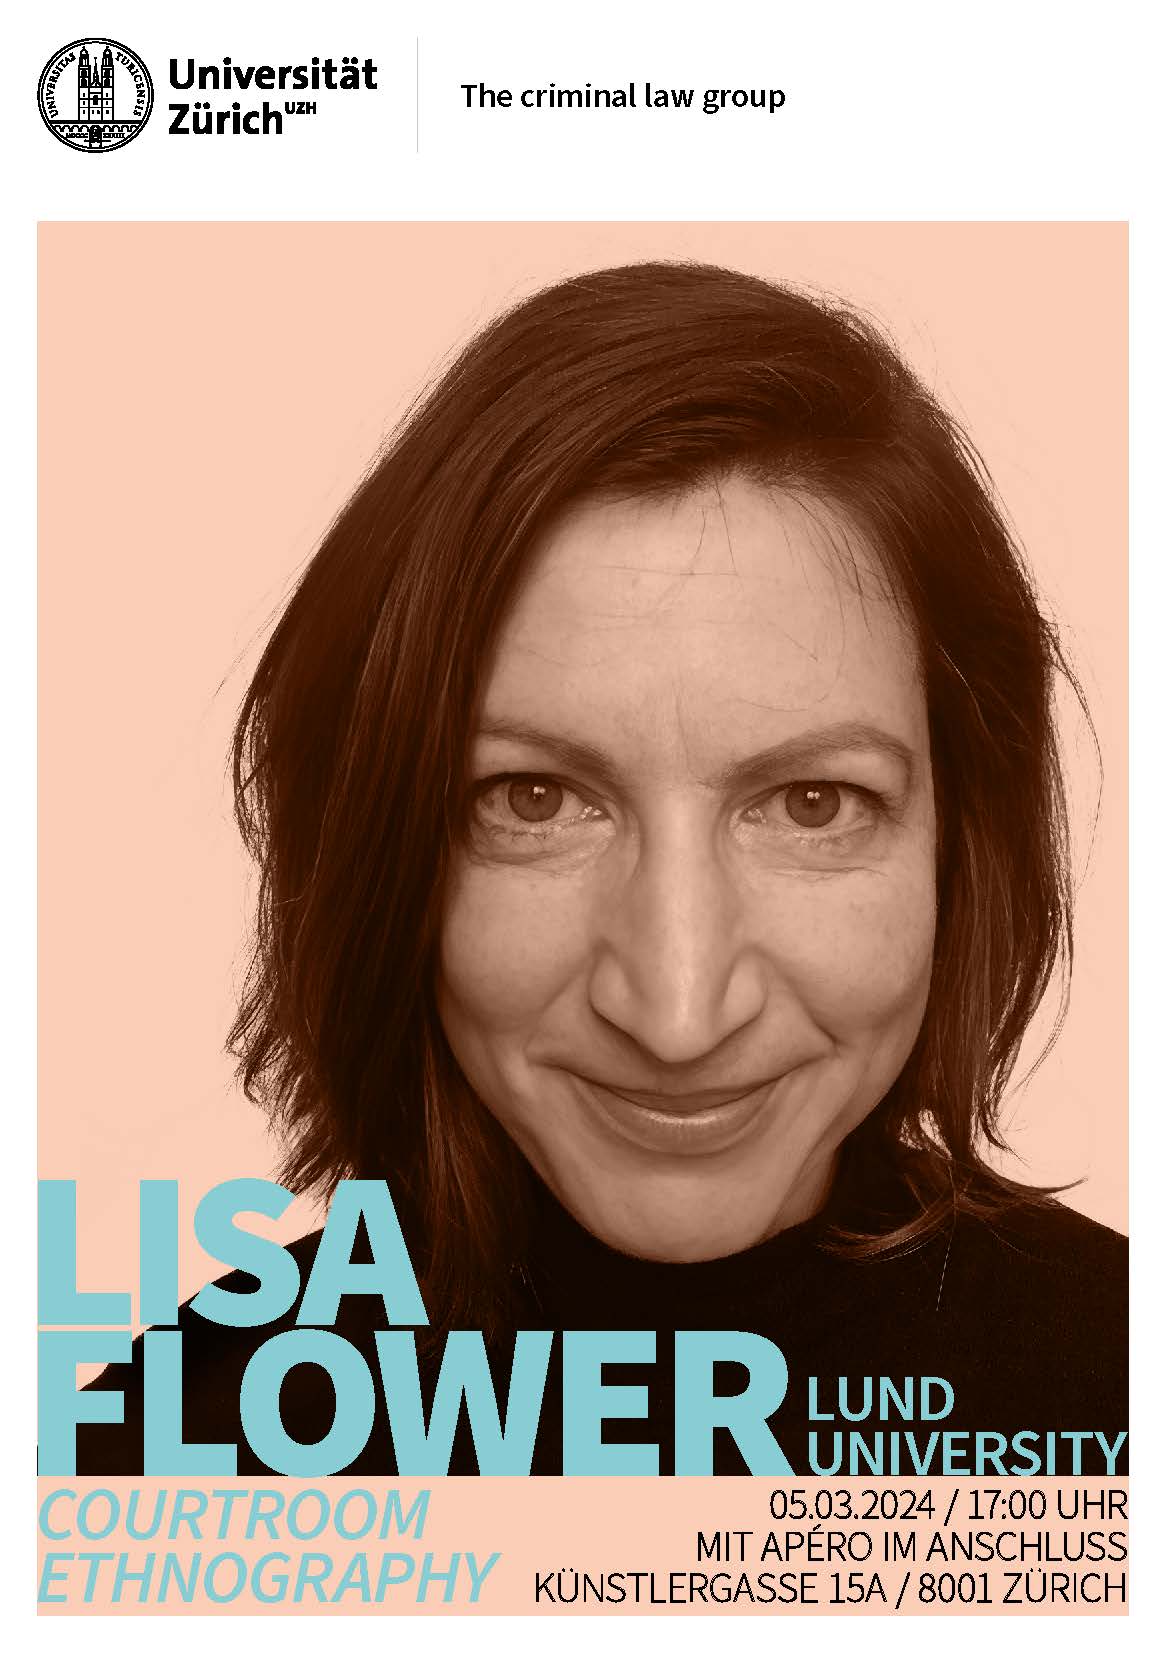 Lisa Flower